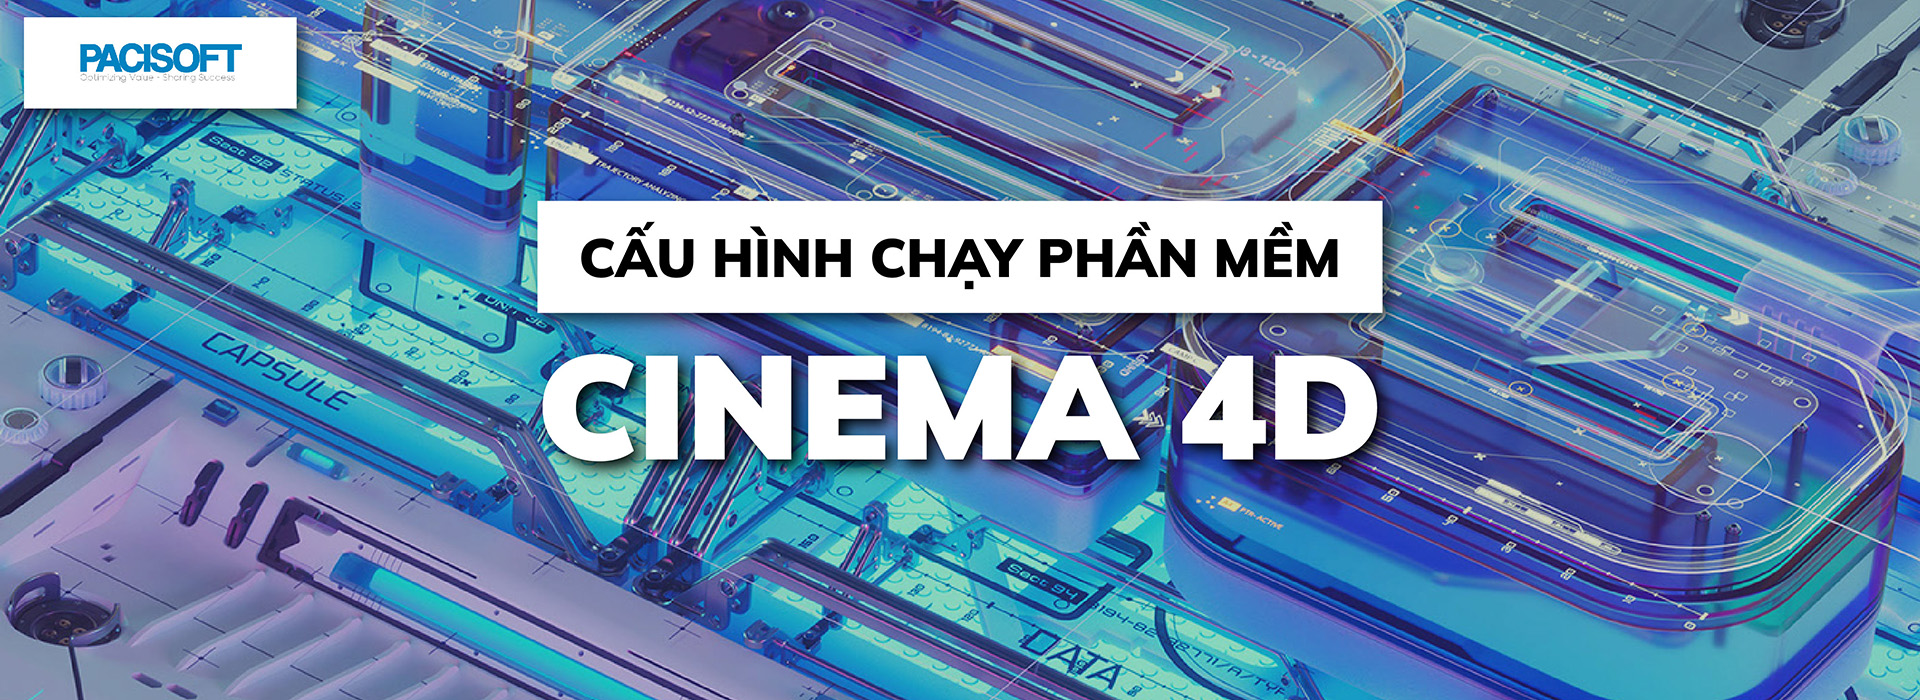 CAU HINH CHAY PHAN MEM CINEMA 4D